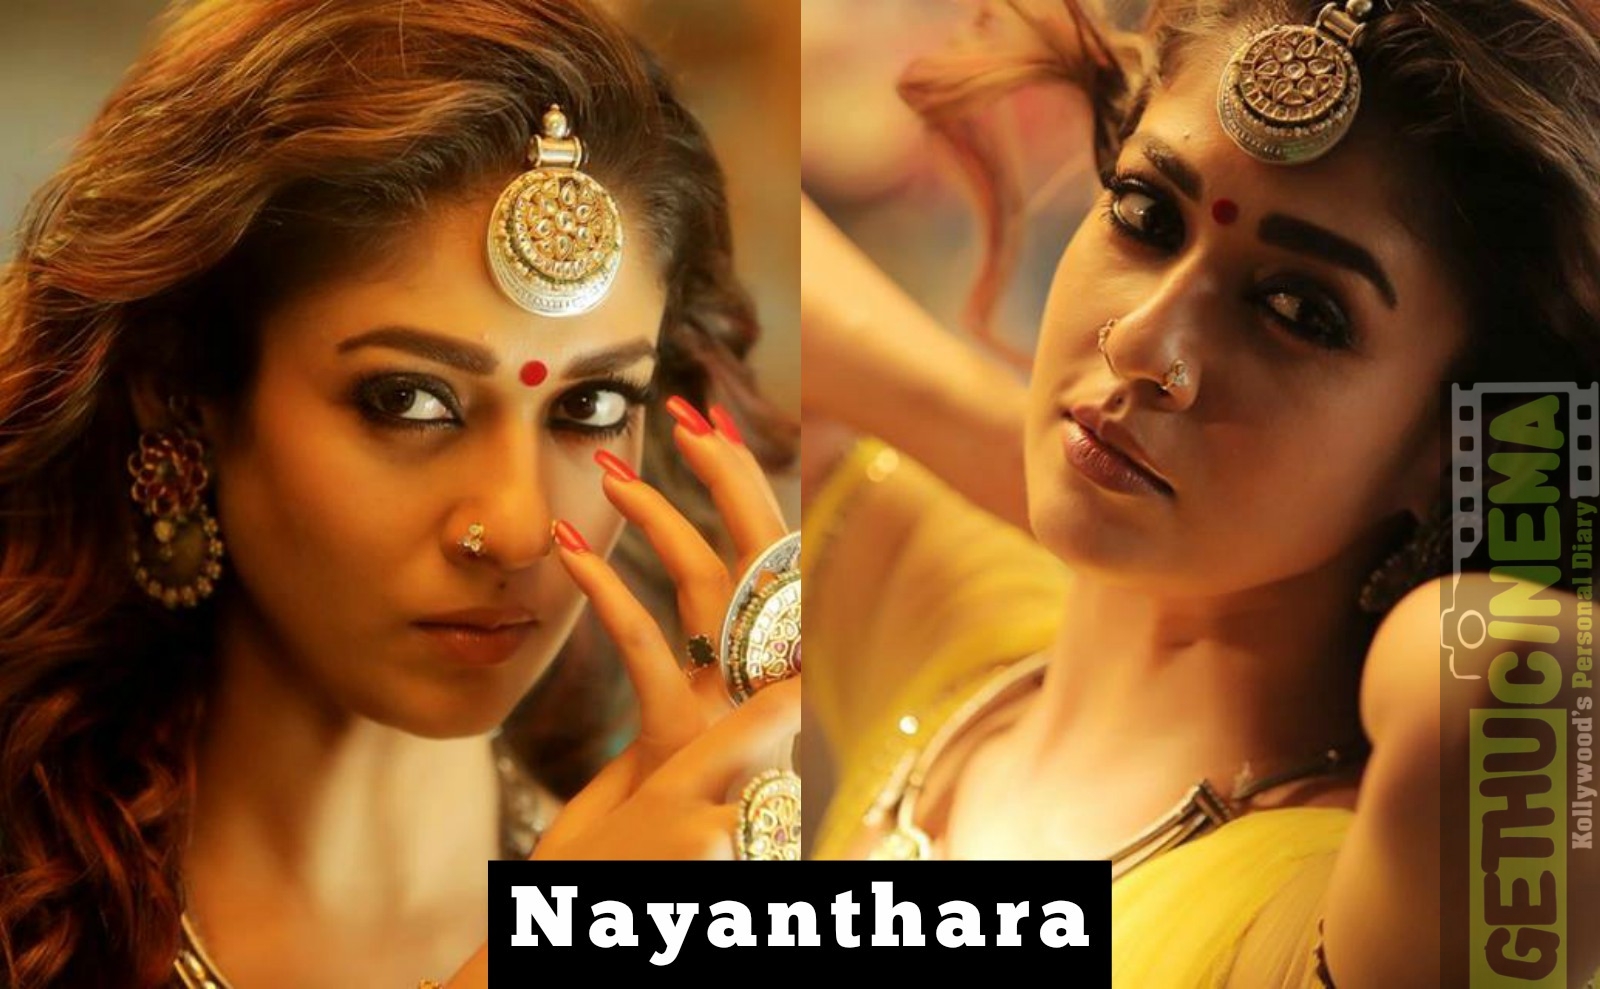 Best of nayanthara hairstyleinimaikkanodigalfalse  Free Watch Download   Todaypk